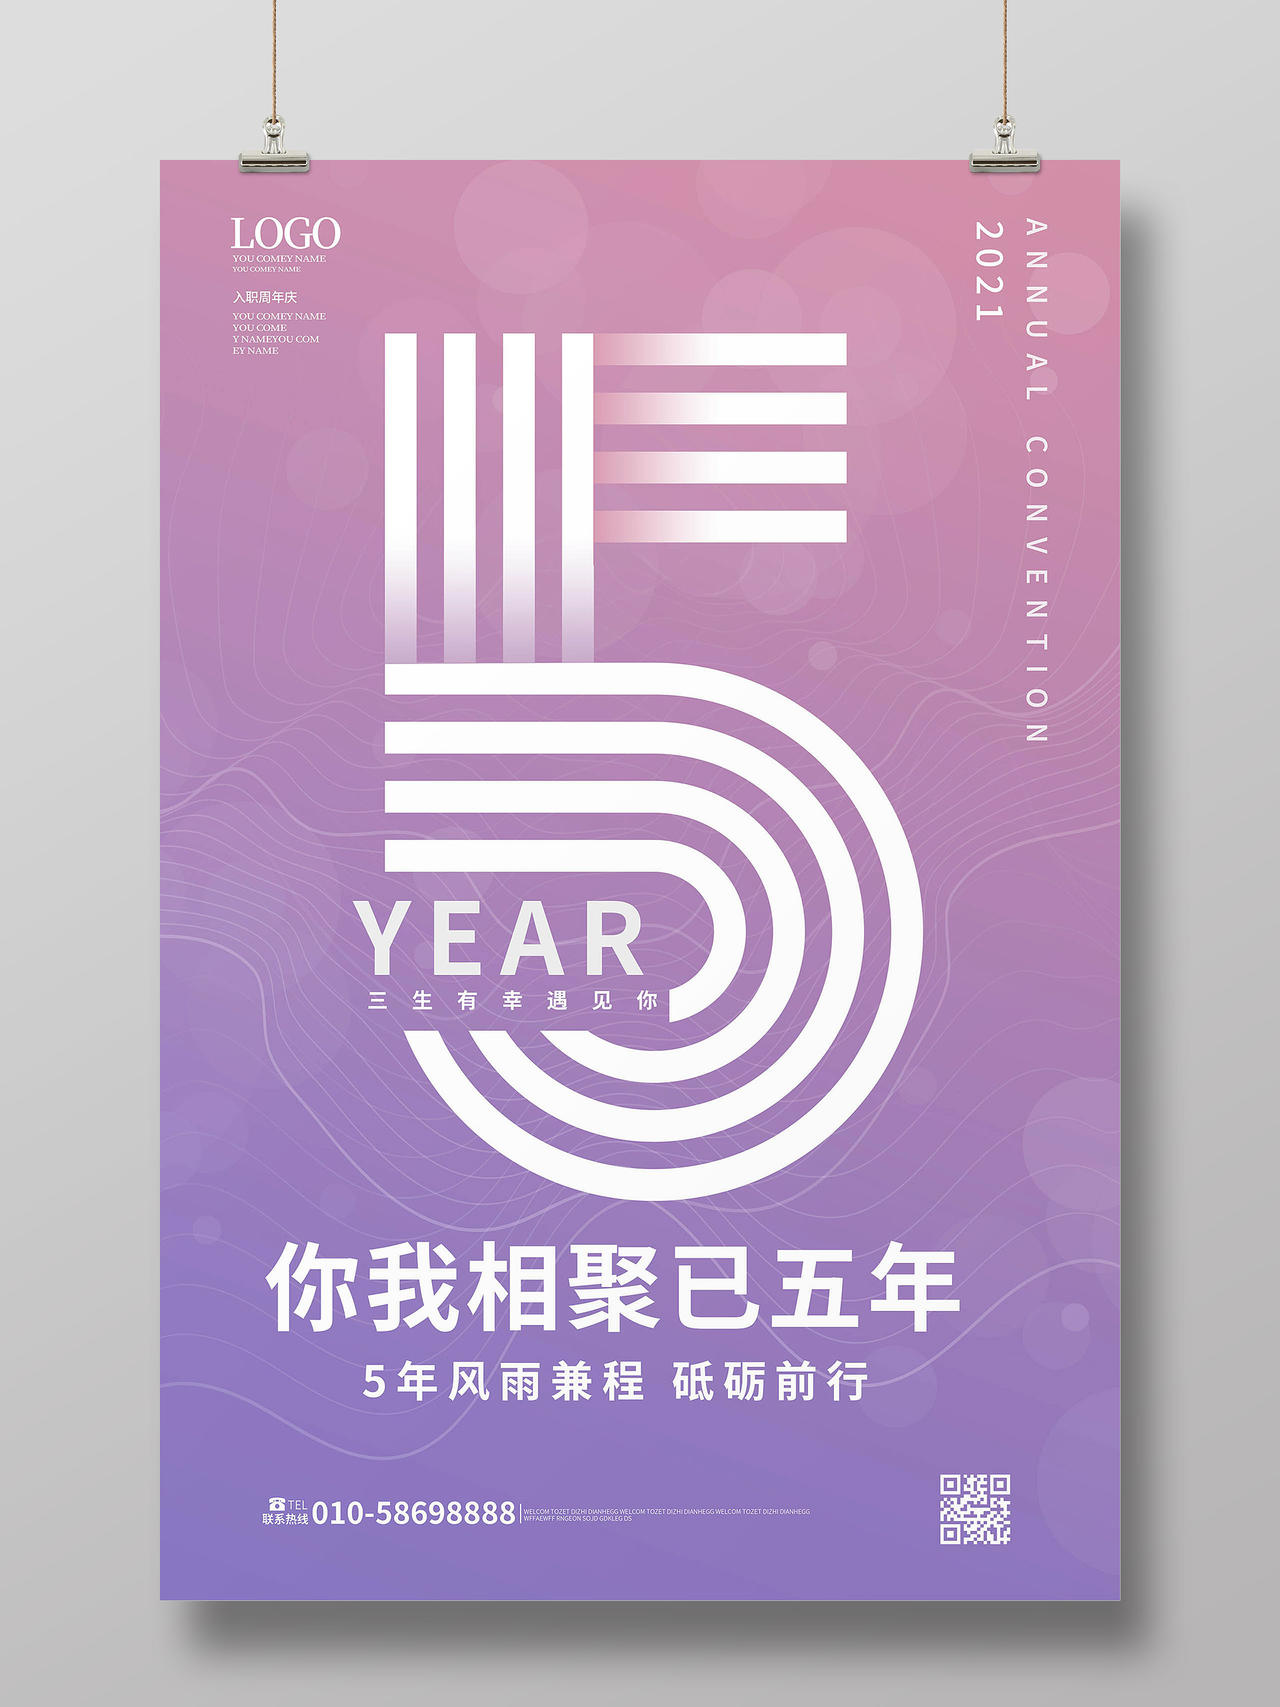 紫色背景创意简洁入职5周年纪念海报设计入职周年